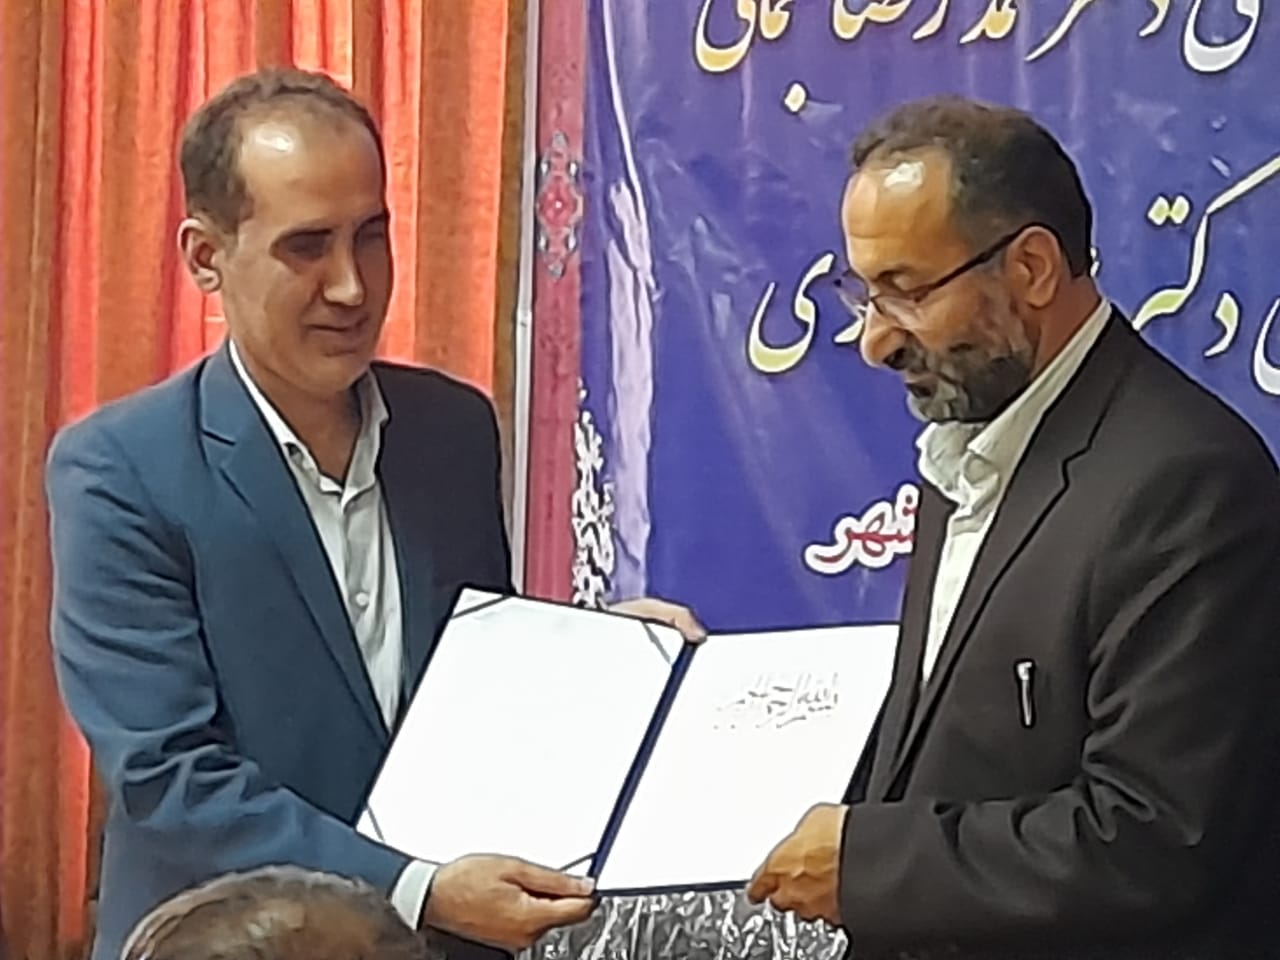 دکتر علی عسکری به عنوان سرپرست جدید دانشگاه پیام نور مرکزبهشهر معرفی شد